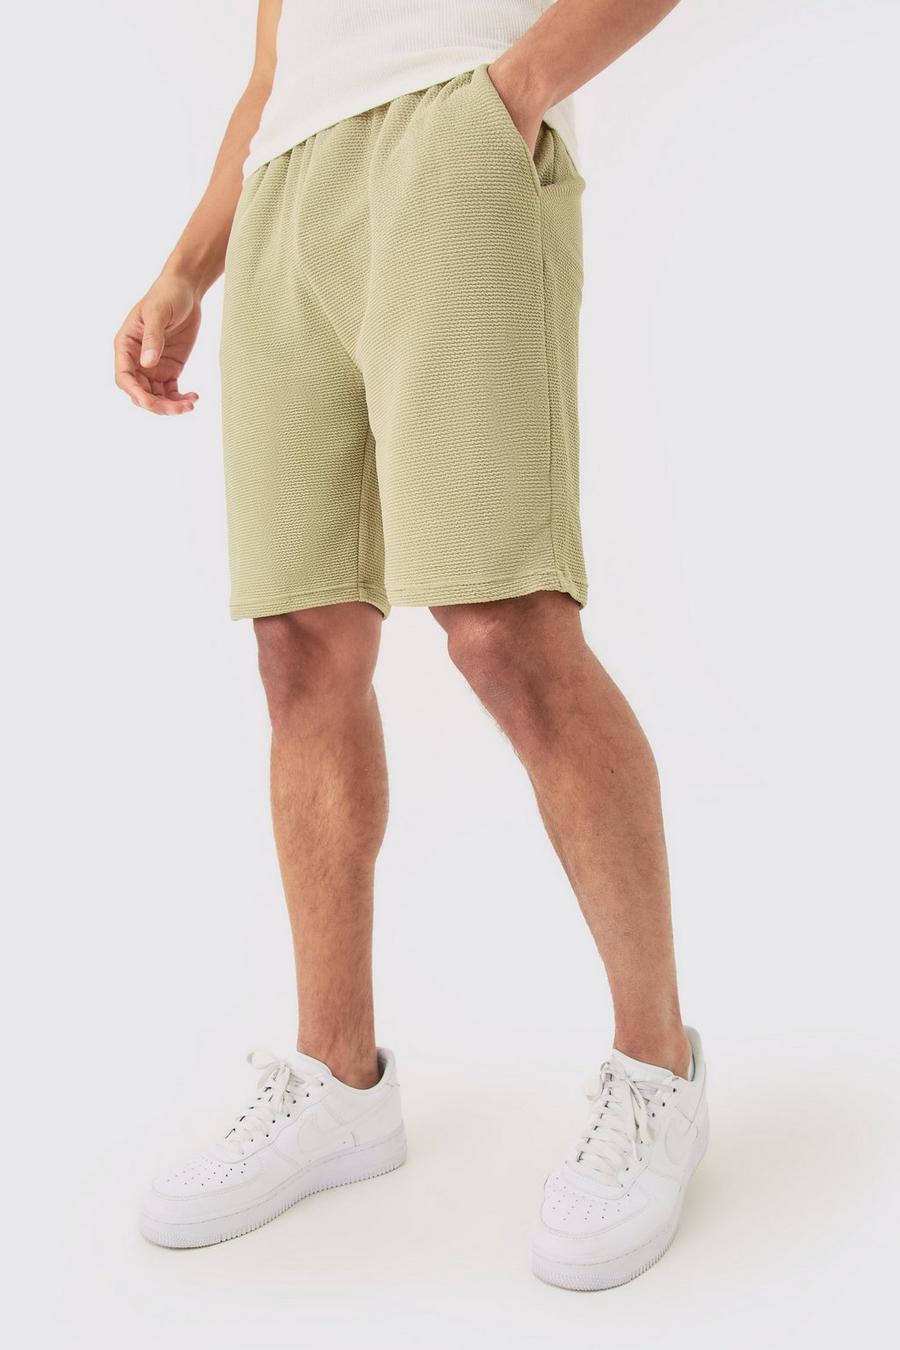 Olive Mellanlånga shorts med struktur och ledig passform